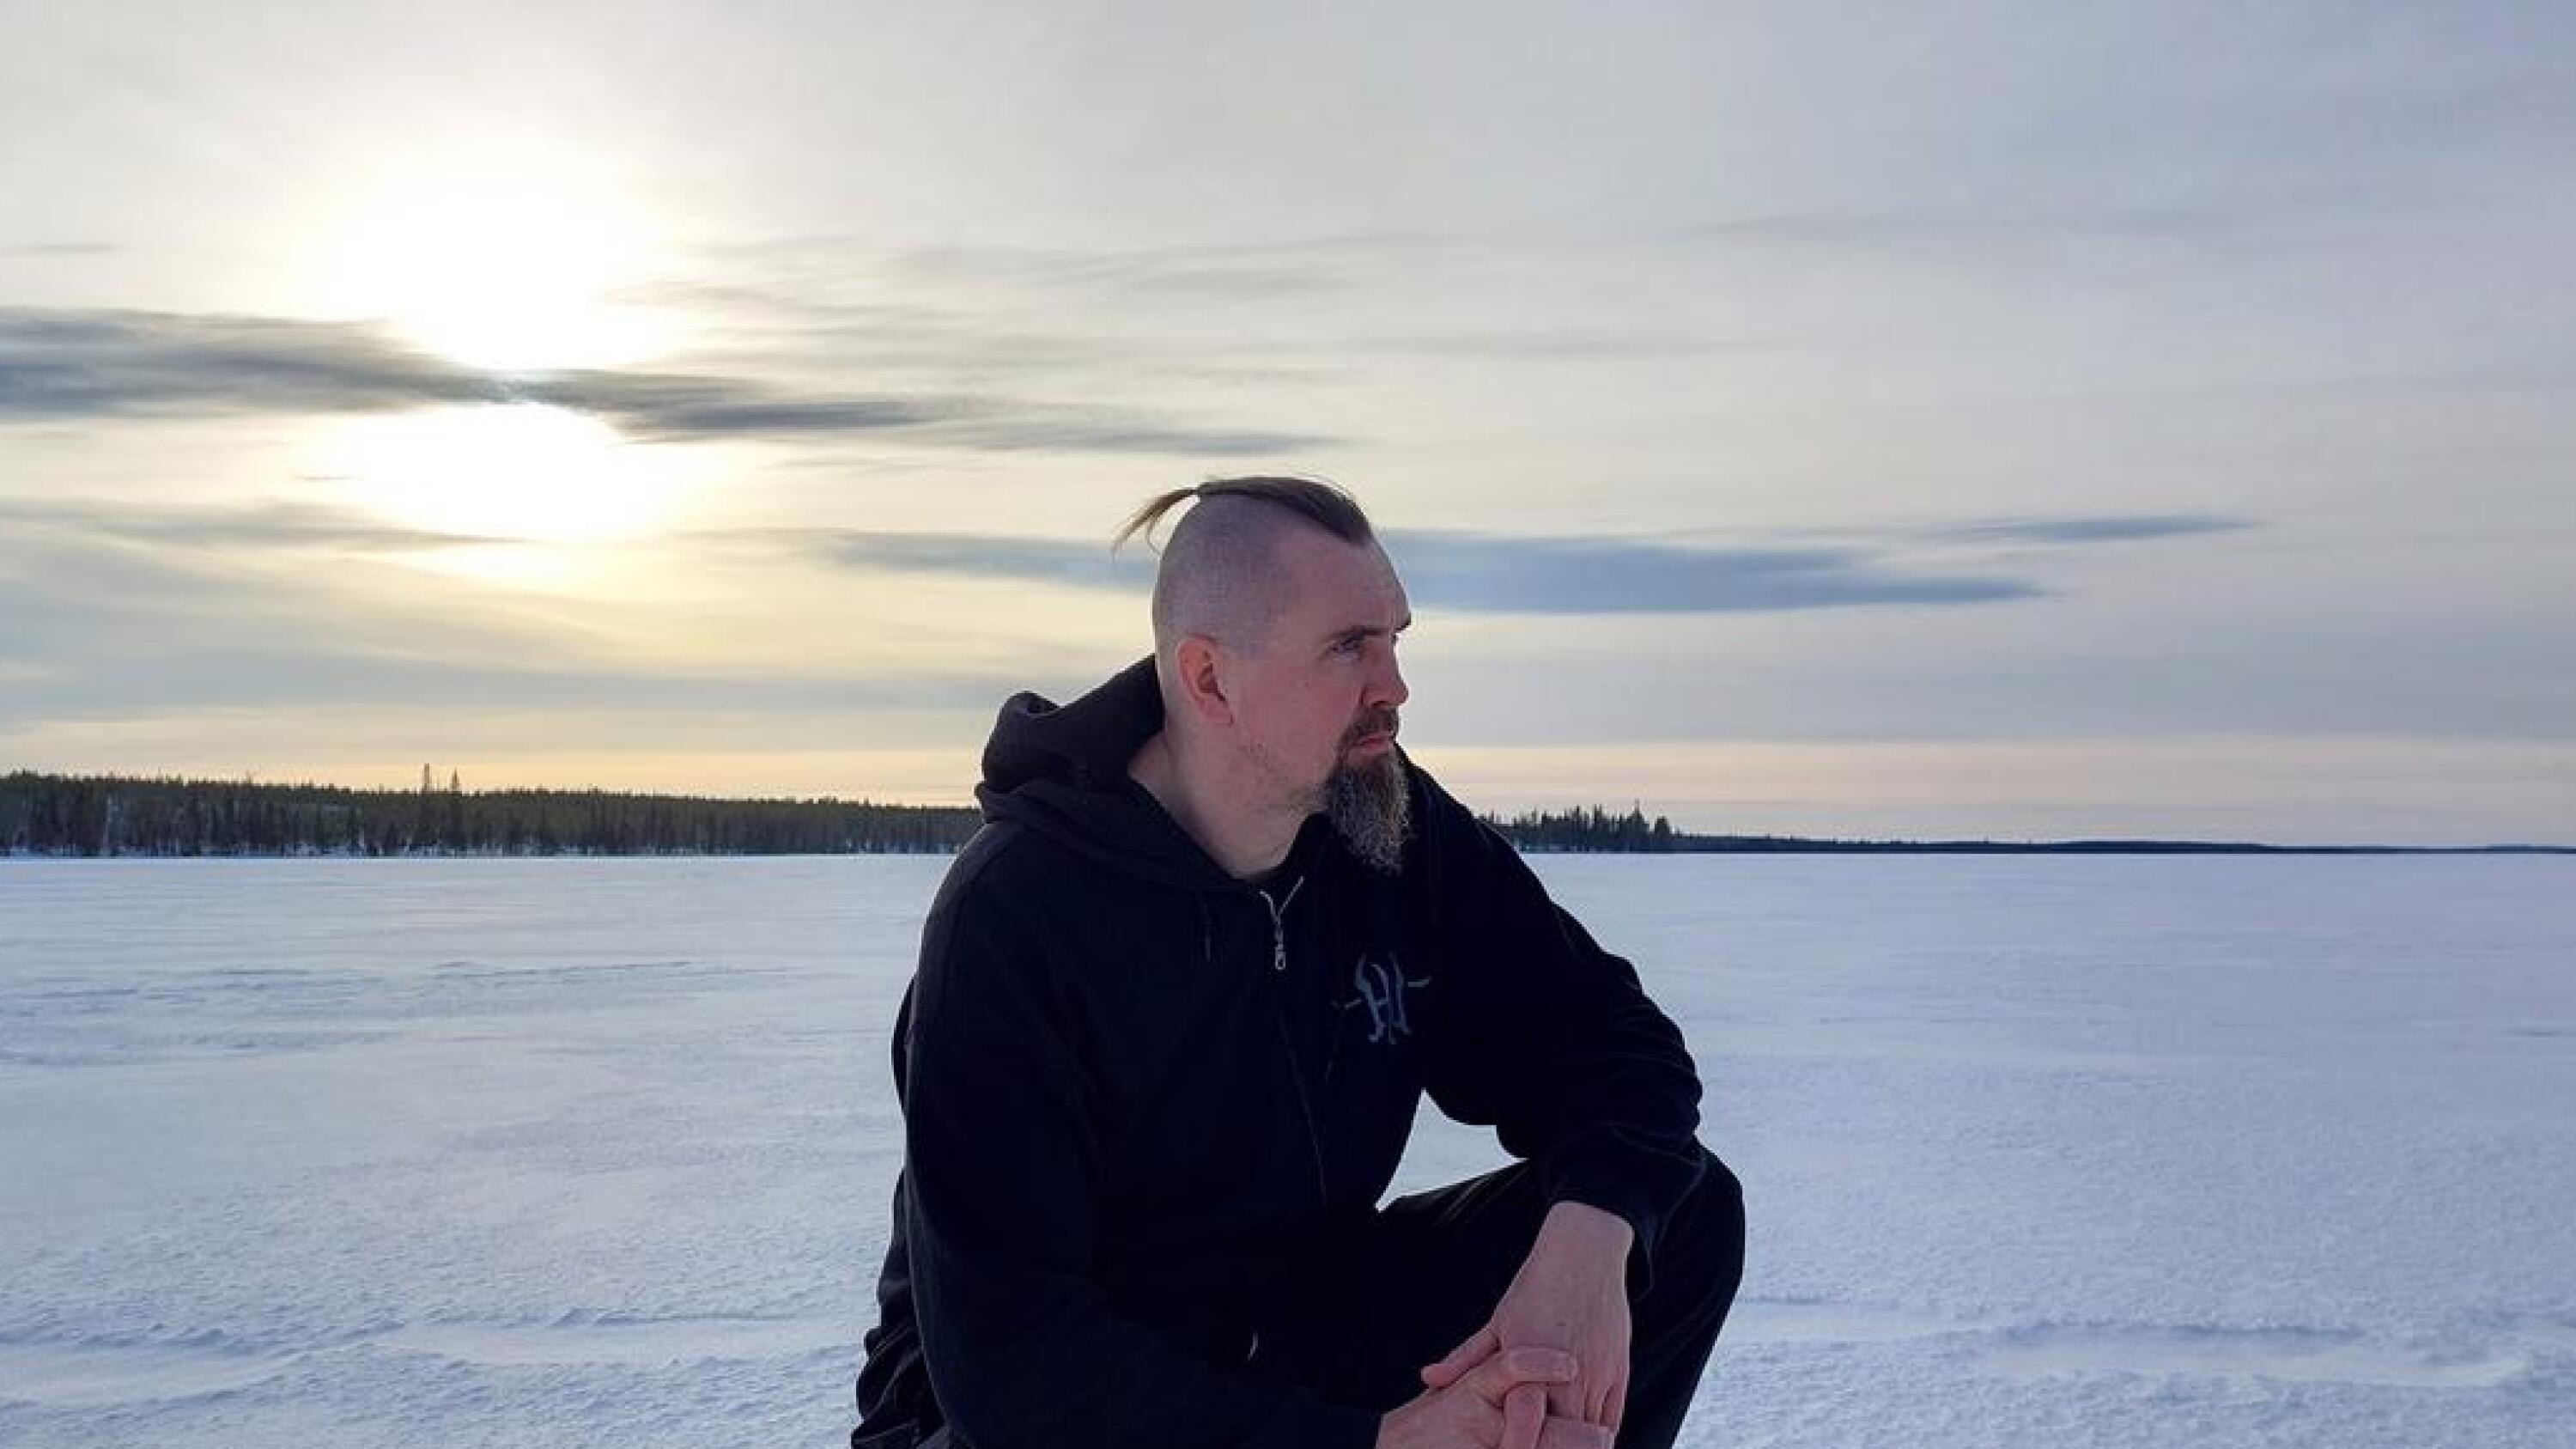 Nex Locus eli Jukka Mursu on tyytyväinen uuteen albumiin Spiritual Playgroundiin, jossa pohjoinen ulottuvuus ja luonto ovat läsnä.